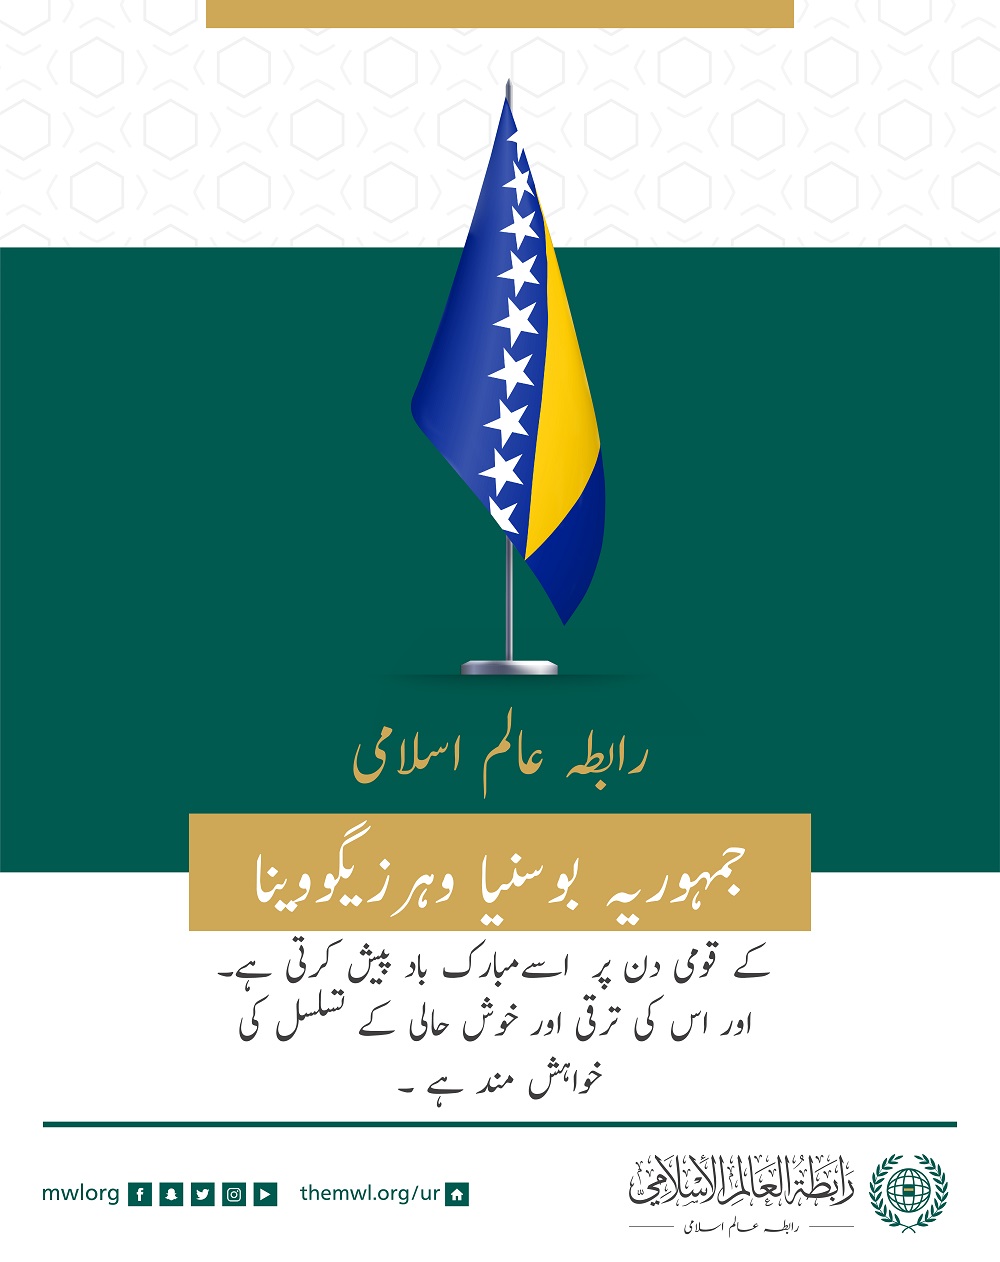 رابطہ عالم اسلامی‬ کی طرف سے جمہوریہ ‫بوسنيا‬ و ‫ہرزیگووینا‬ کے قومی دن کے موقع پر مبارکباد کا پیغام: